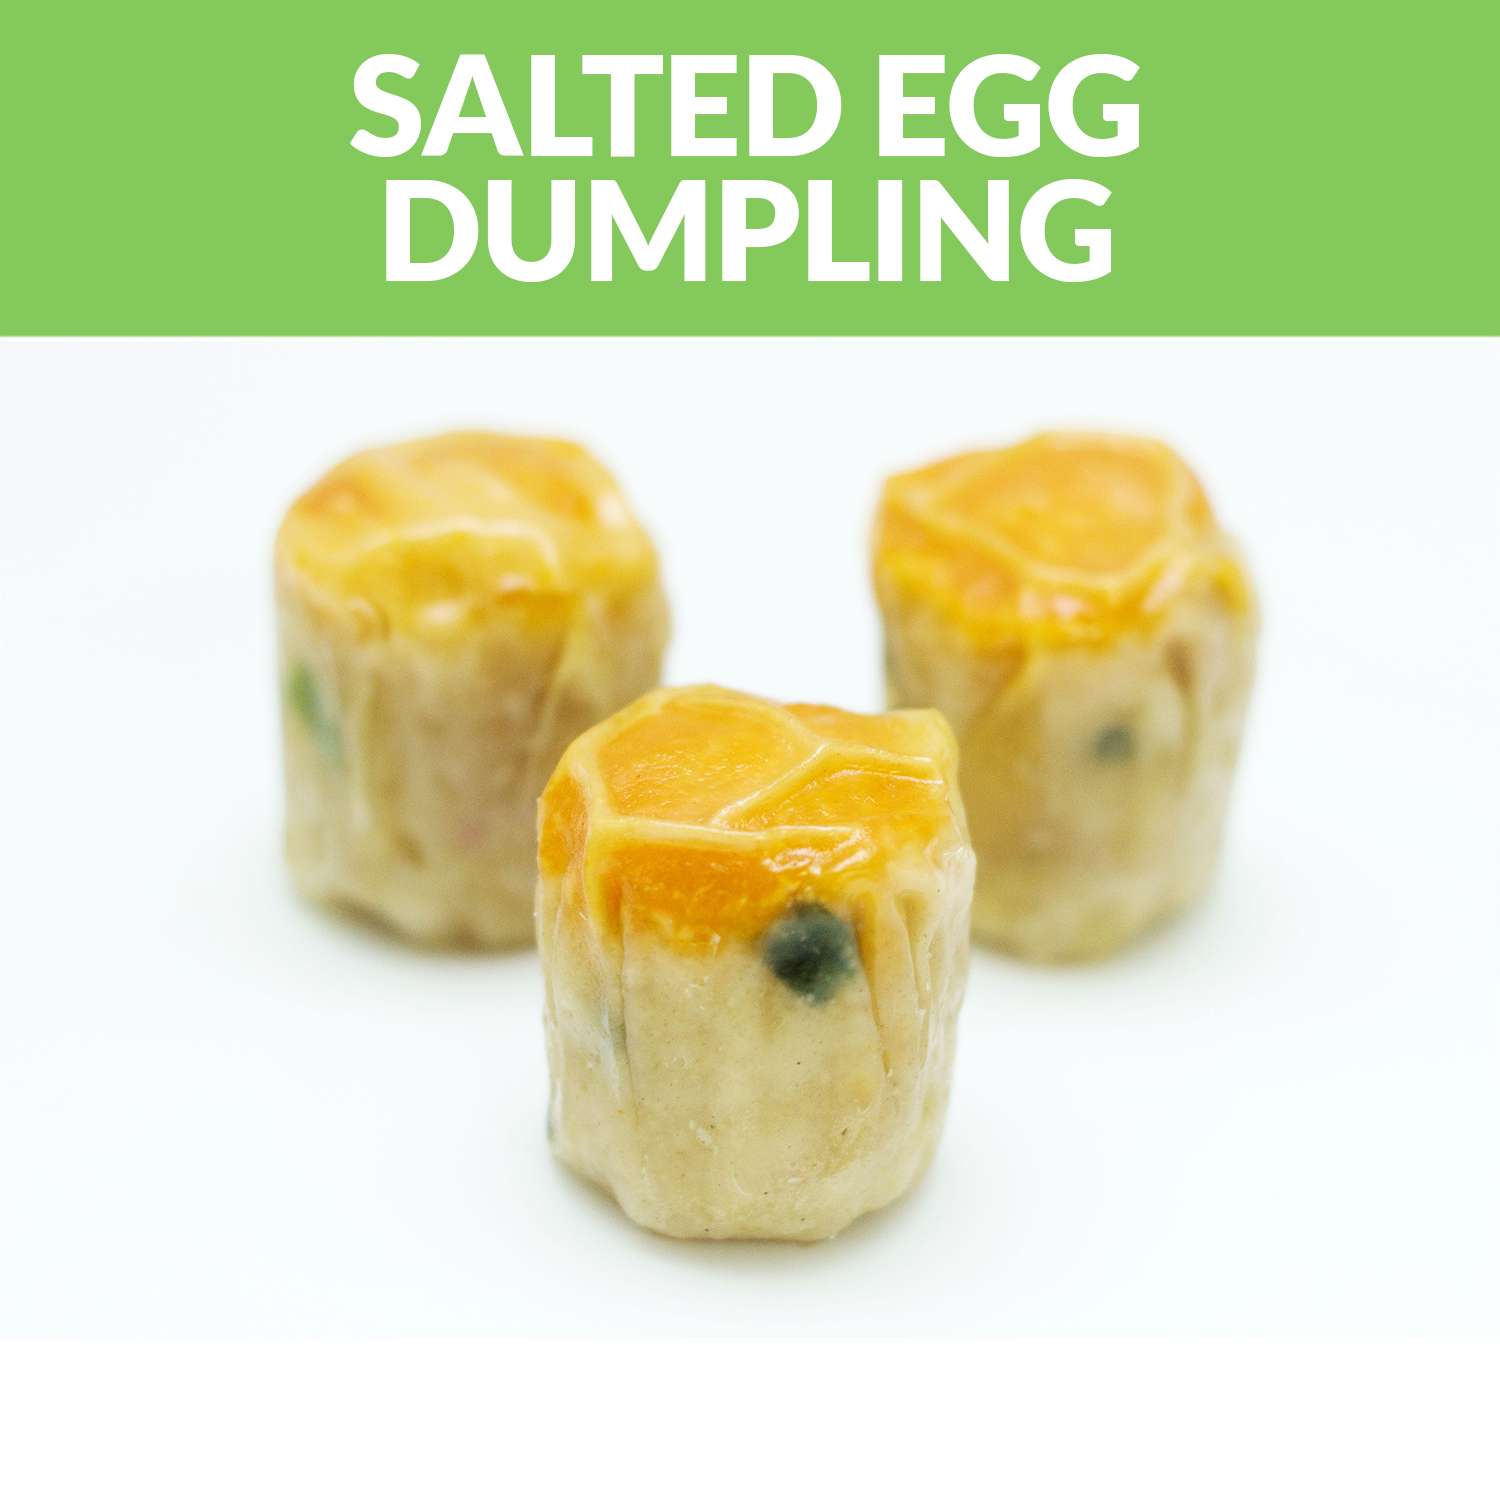 Products-Dumpling-Salted-Egg-Dumpling.png